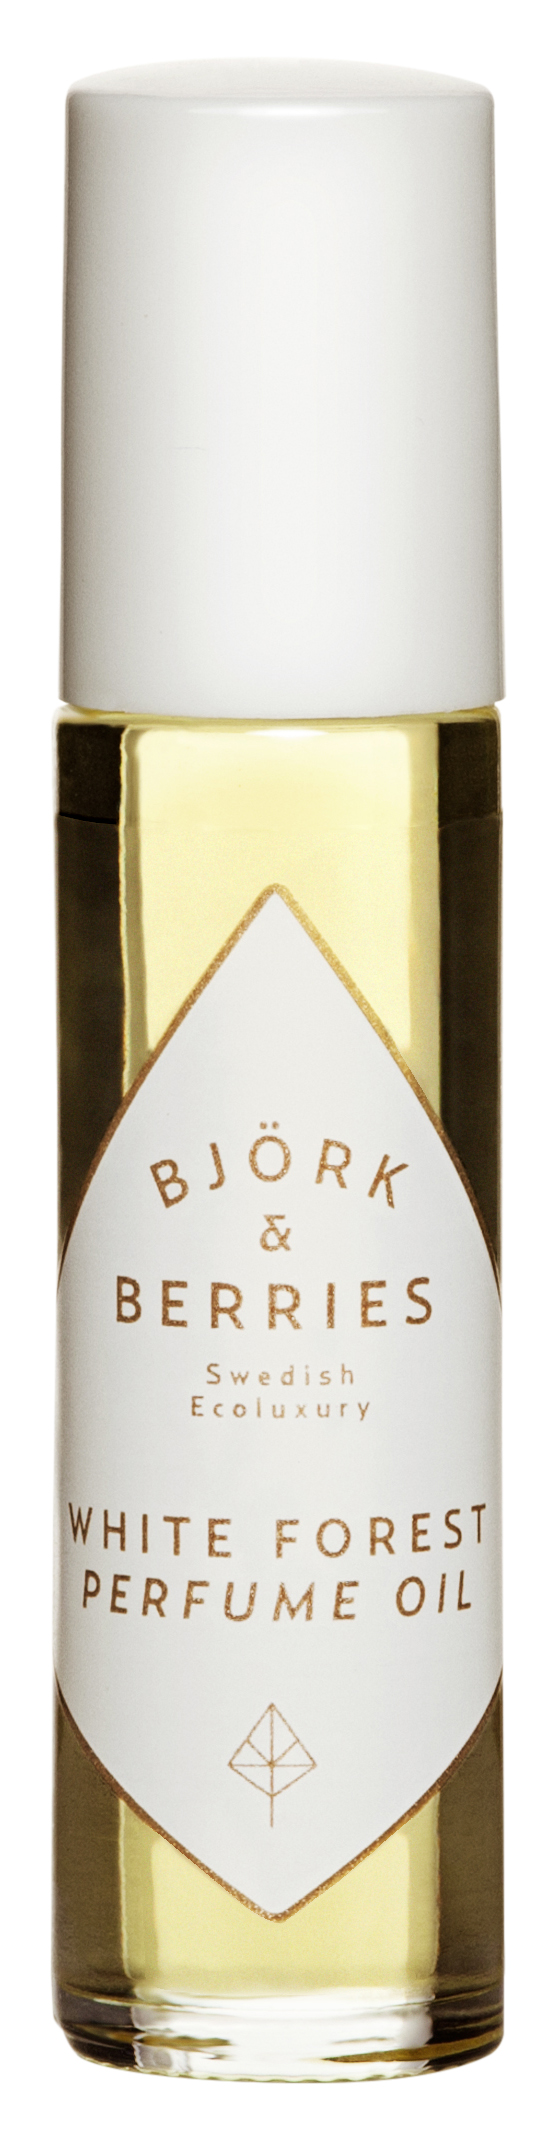 Björk & Berries White Forest Perfume Oil 10ml